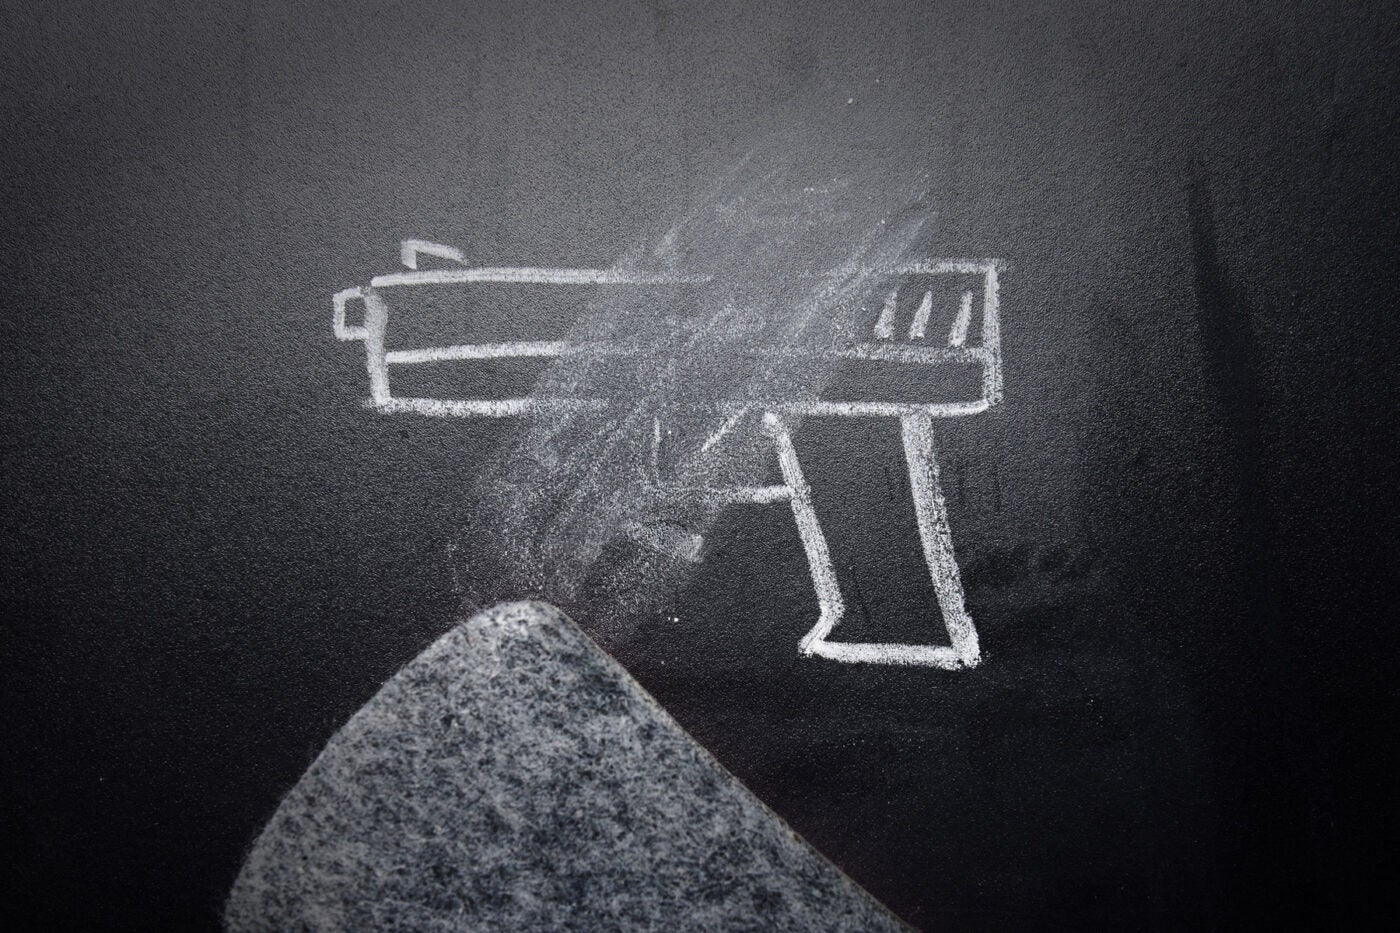 A chalk-drawn handgun being erased on a black chalkboard